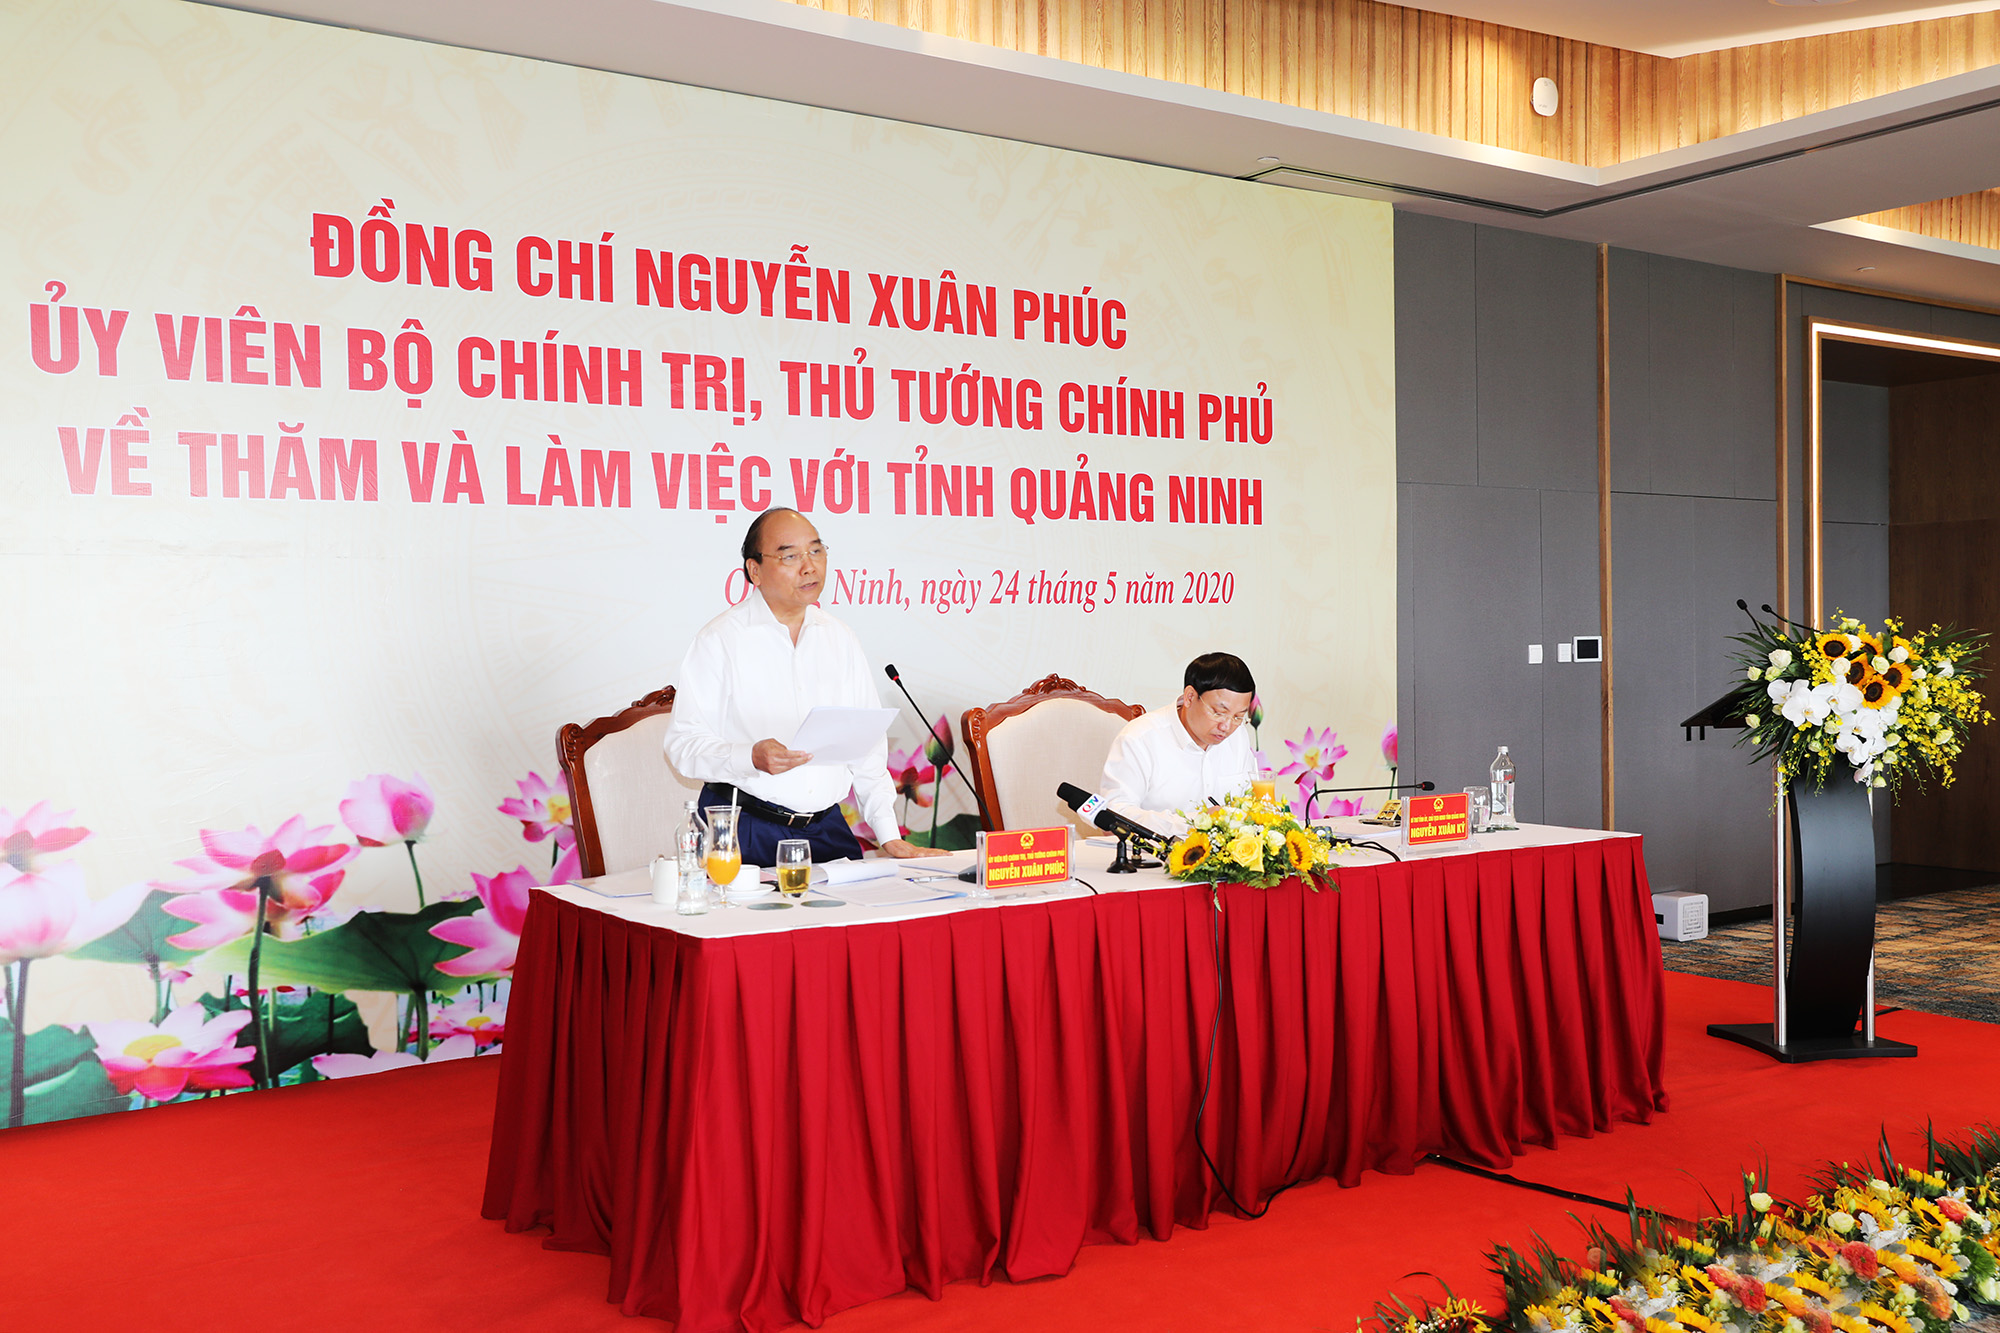 Đồng chí Nguyễn Xuân Phúc, Thủ tướng Chính phủ chủ trì buổi làm việc